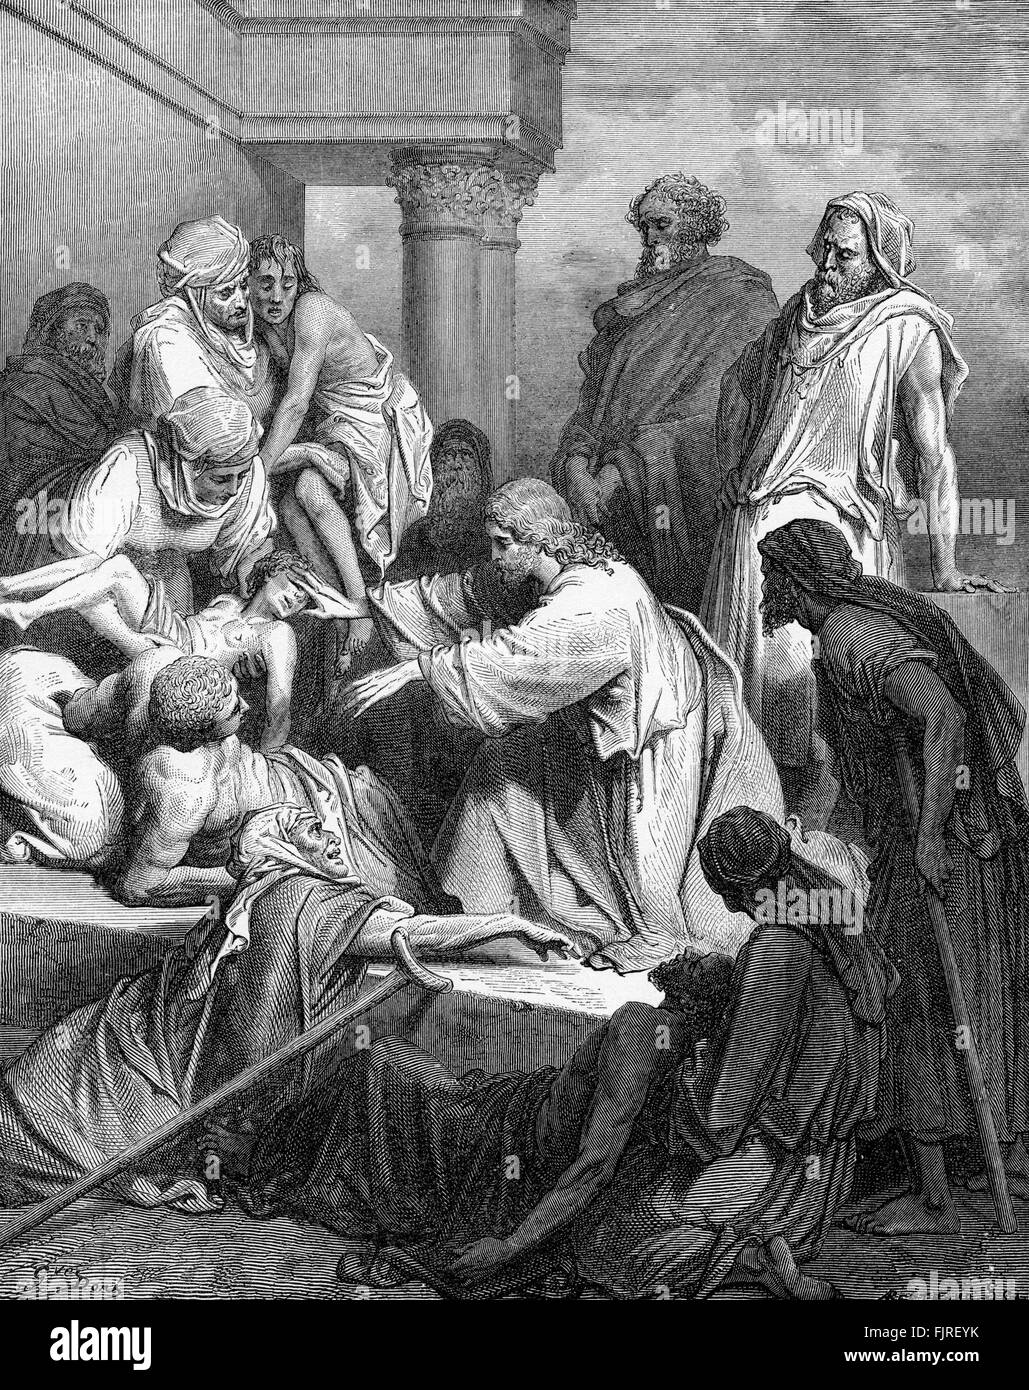 Jesús en la curación de los enfermos (Mateo capítulo IV), ilustración de Gustave Doré (1832 - 1883) Foto de stock